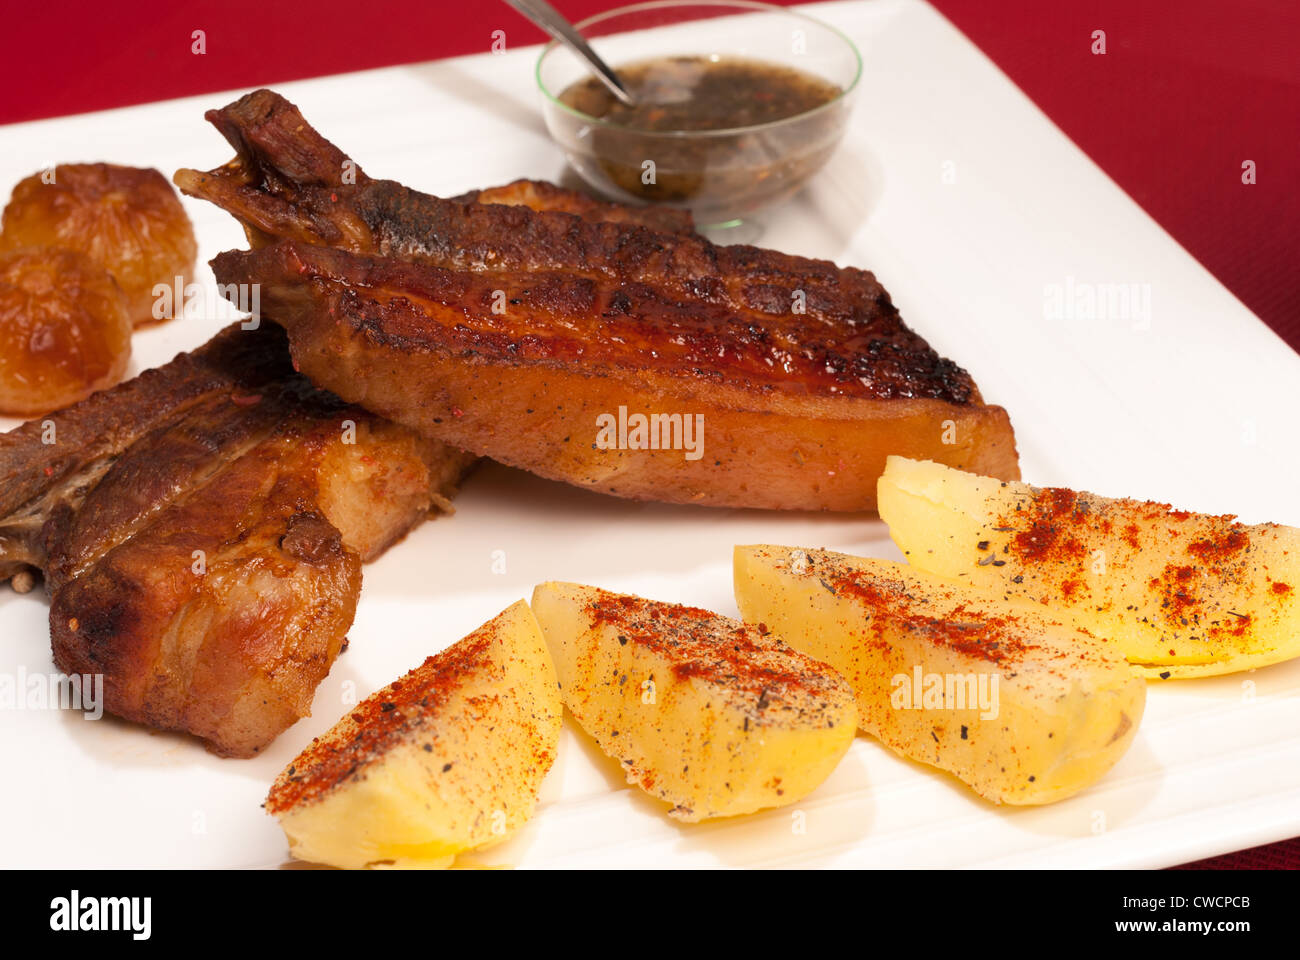 Côtes de porc caramélisées grillé servi avec sauce Chimichurri argentine et garniture Banque D'Images